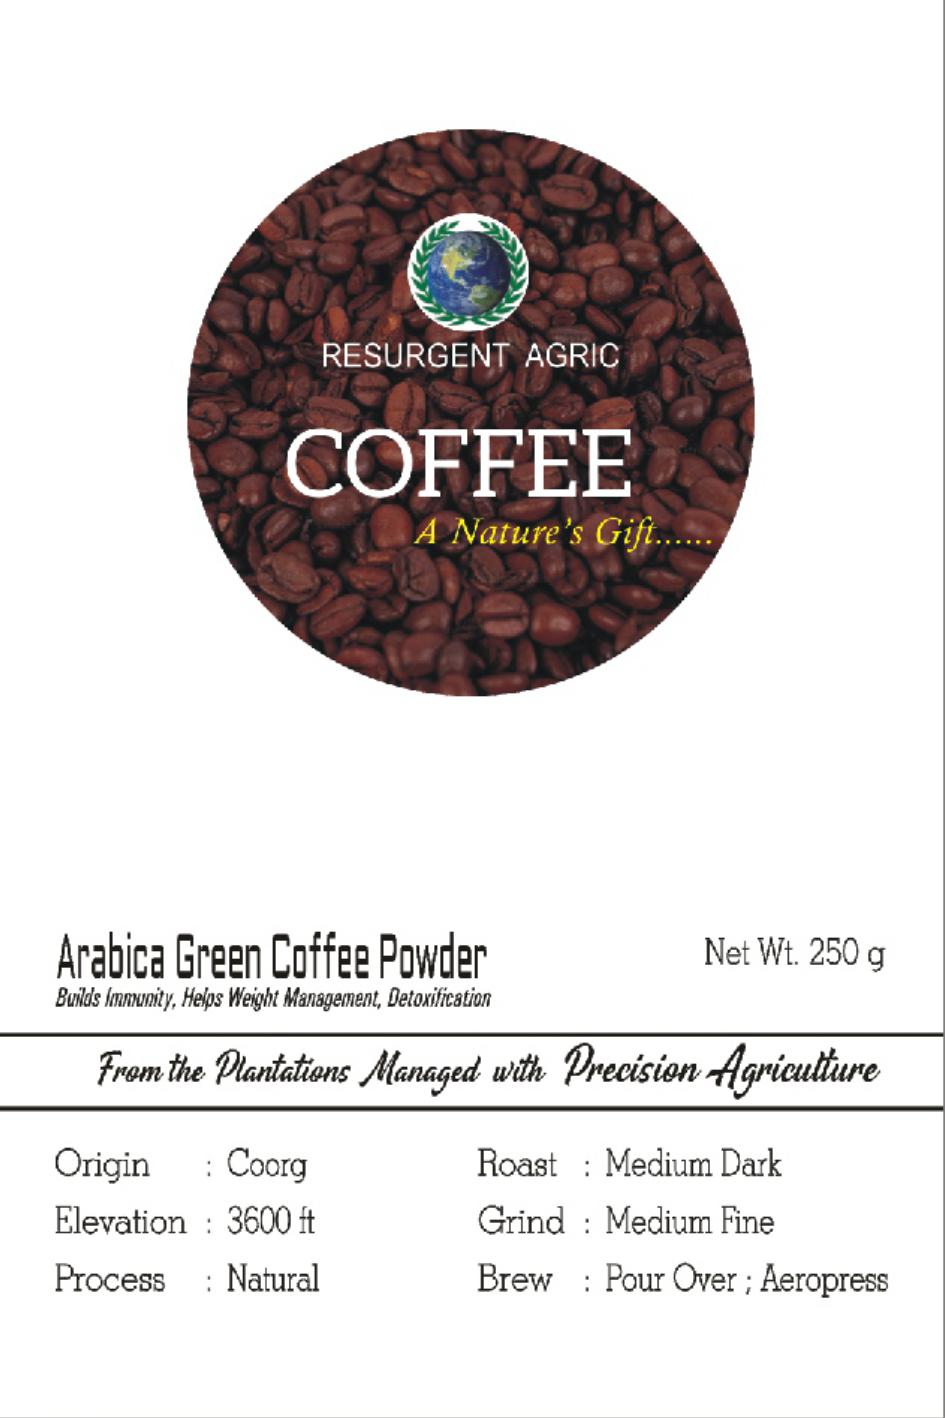 Arabica Green Coffee Powder (Medium Dark - Medium Fine)